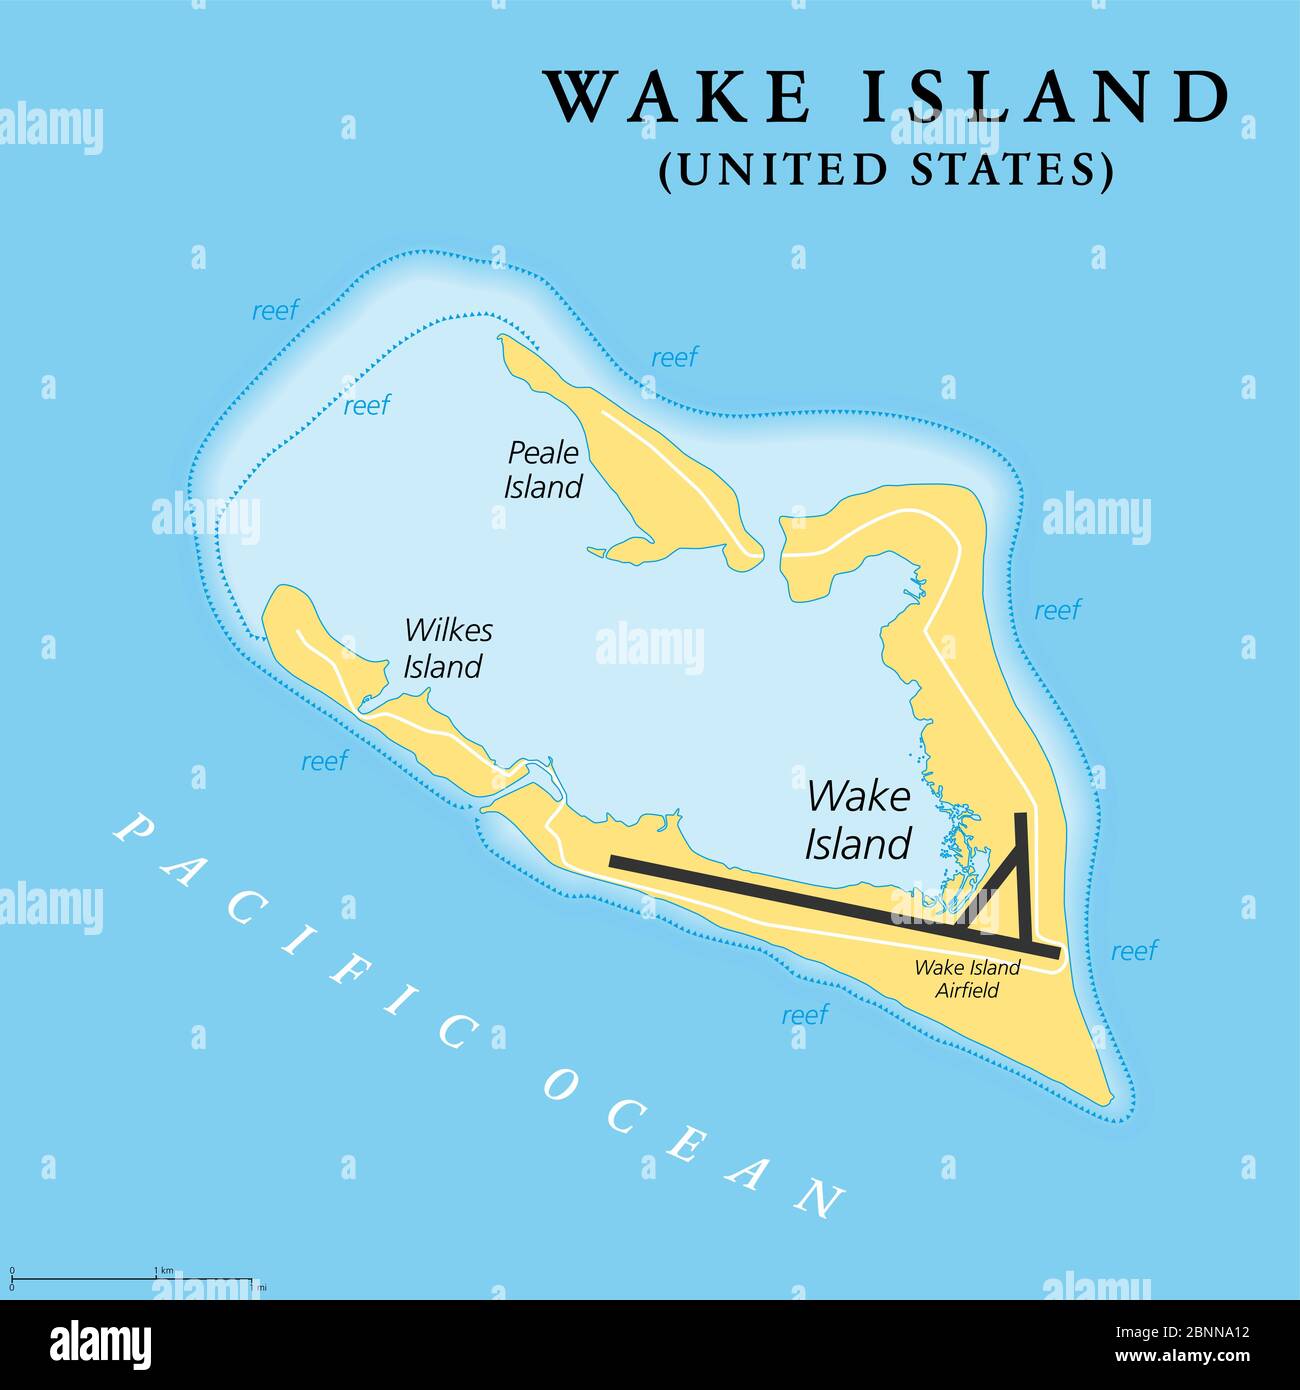 Isola di Wake, mappa politica. Chiamato anche Atollo di Wake, un atollo corallino nel Pacifico nella zona nord-orientale della Micronesia. Foto Stock